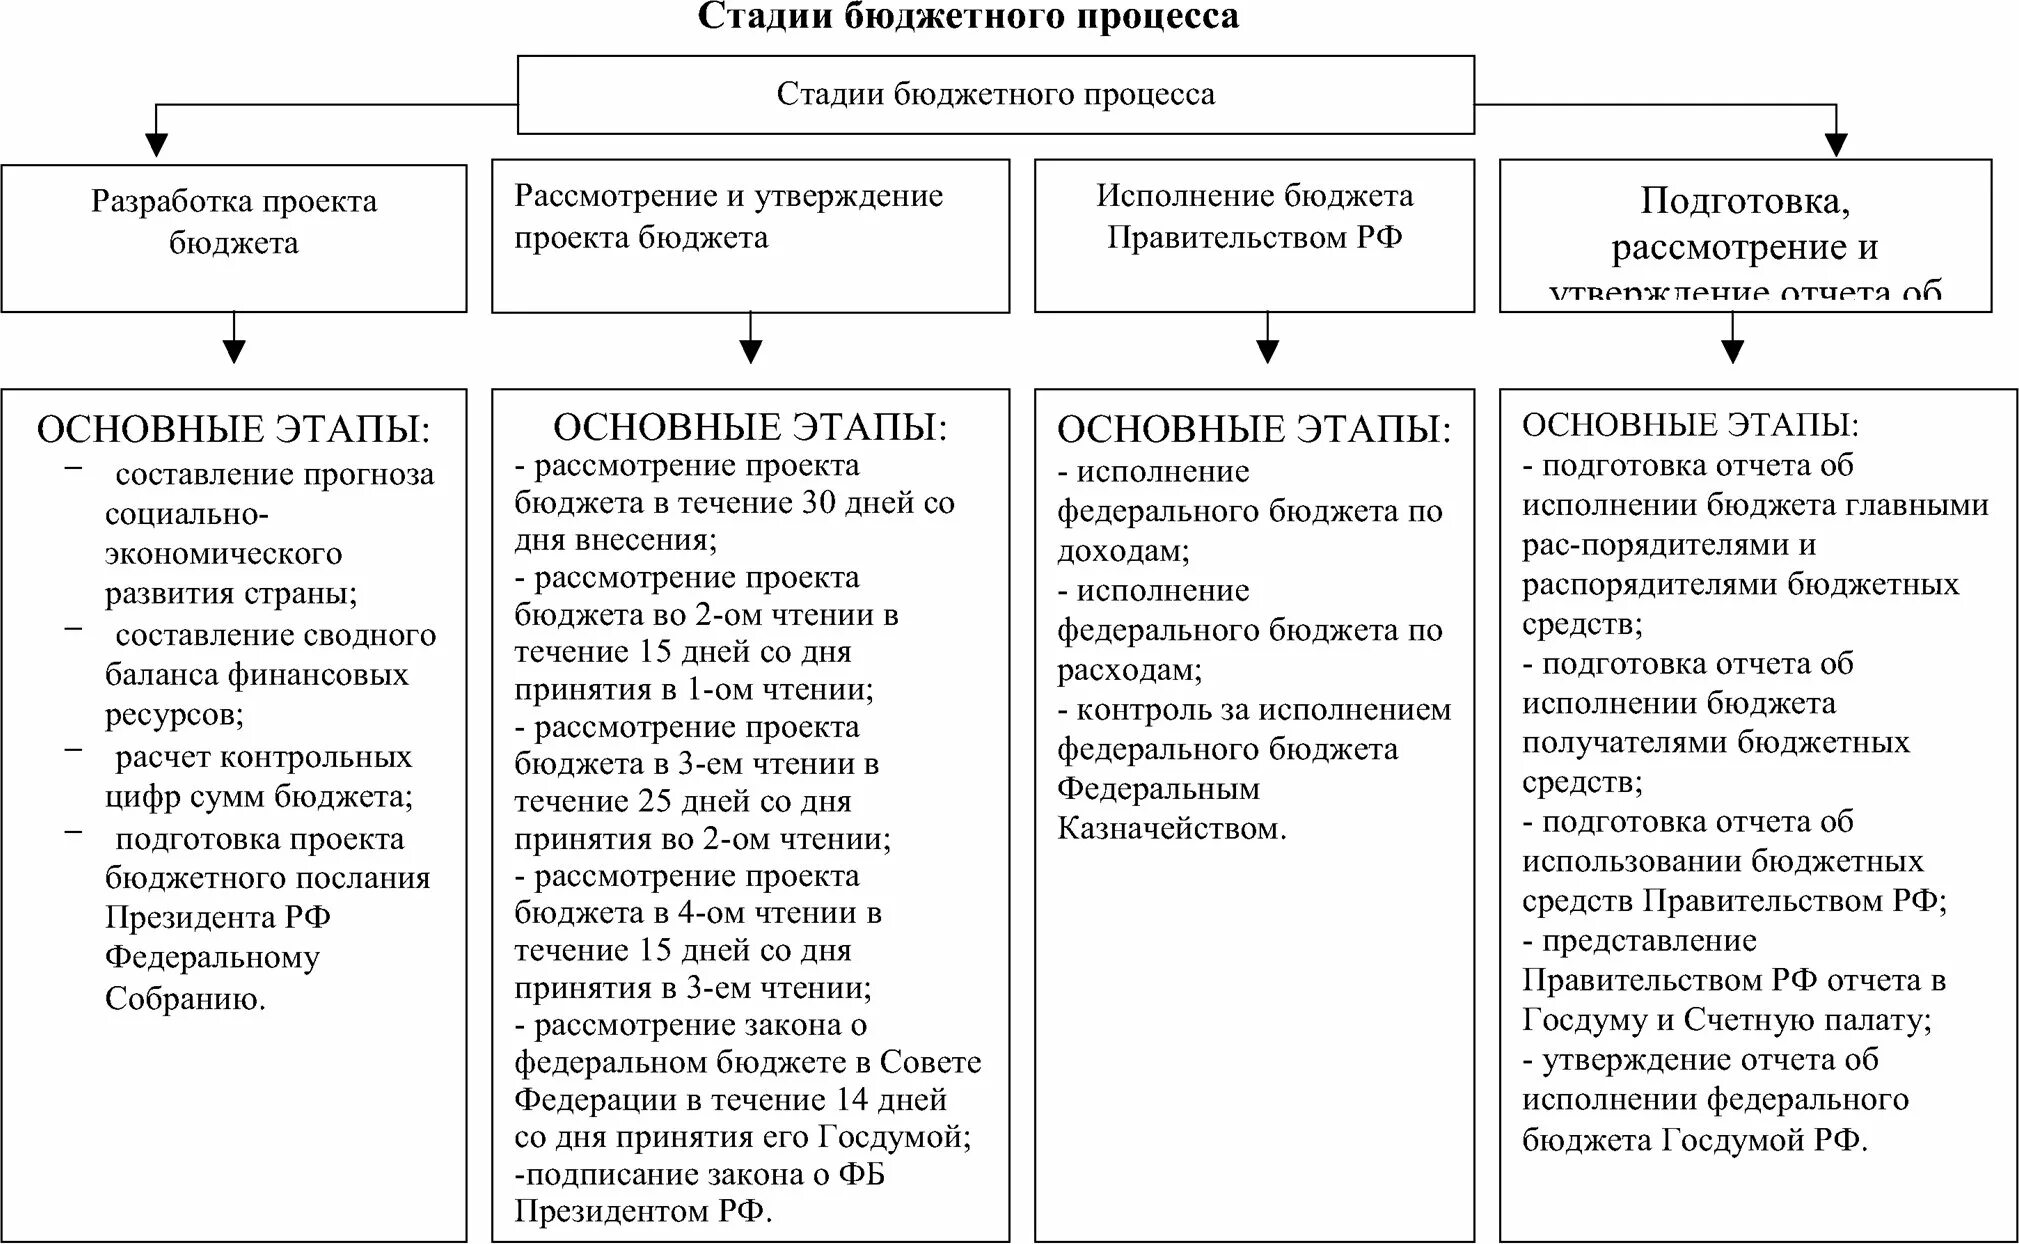 Основные группы бюджетов. Схема бюджетного процесса на федеральном уровне. Стадии бюджетного процесса таблица. Схема стадий бюджетного процесса. Этапы бюджетного процесса в РФ (федеральный бюджет).